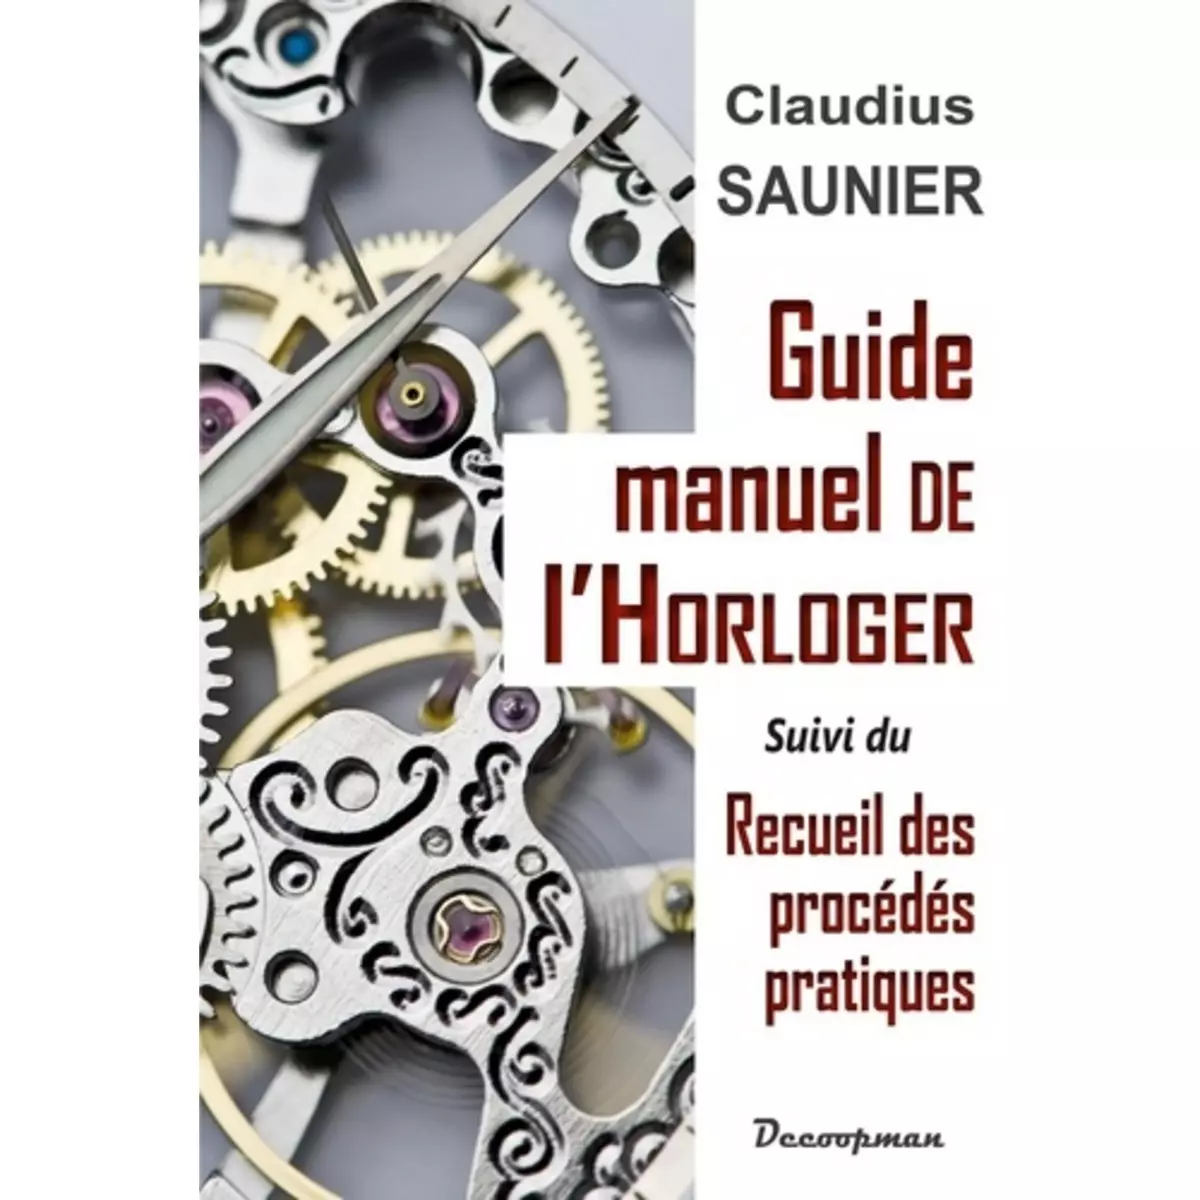  GUIDE-MANUEL DE L'HORLOGER, Saunier Claudius